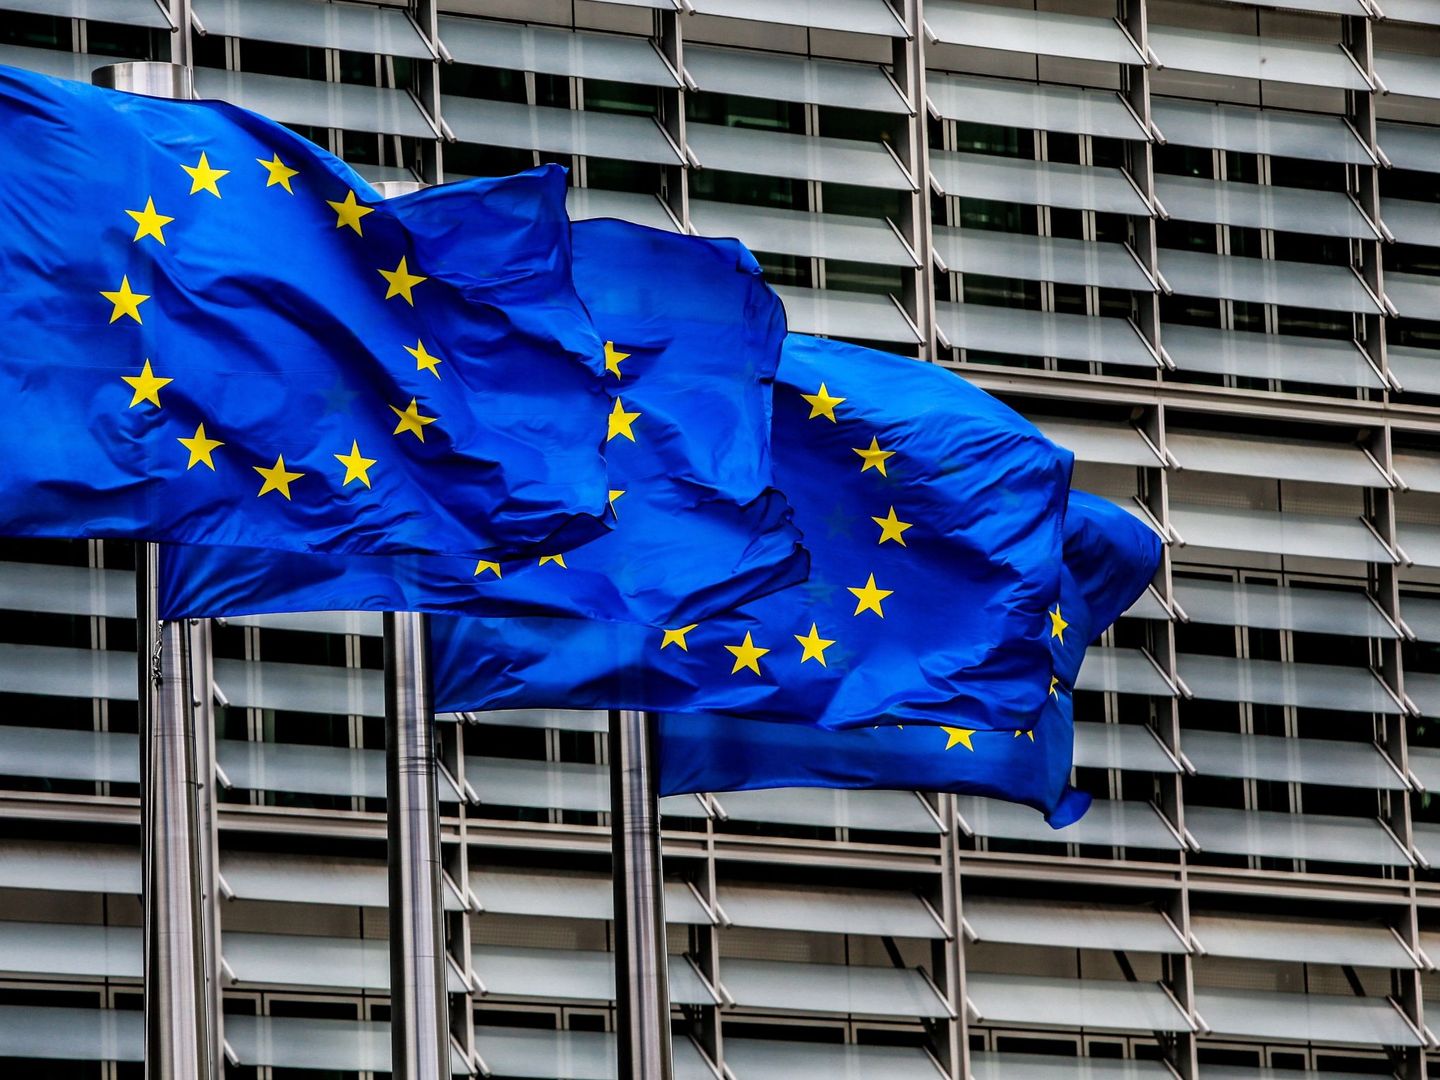 Banderas de la Unión Europea (UE) ondean frente a la sede de la Comisión Europea en Bruselas. (EFE)